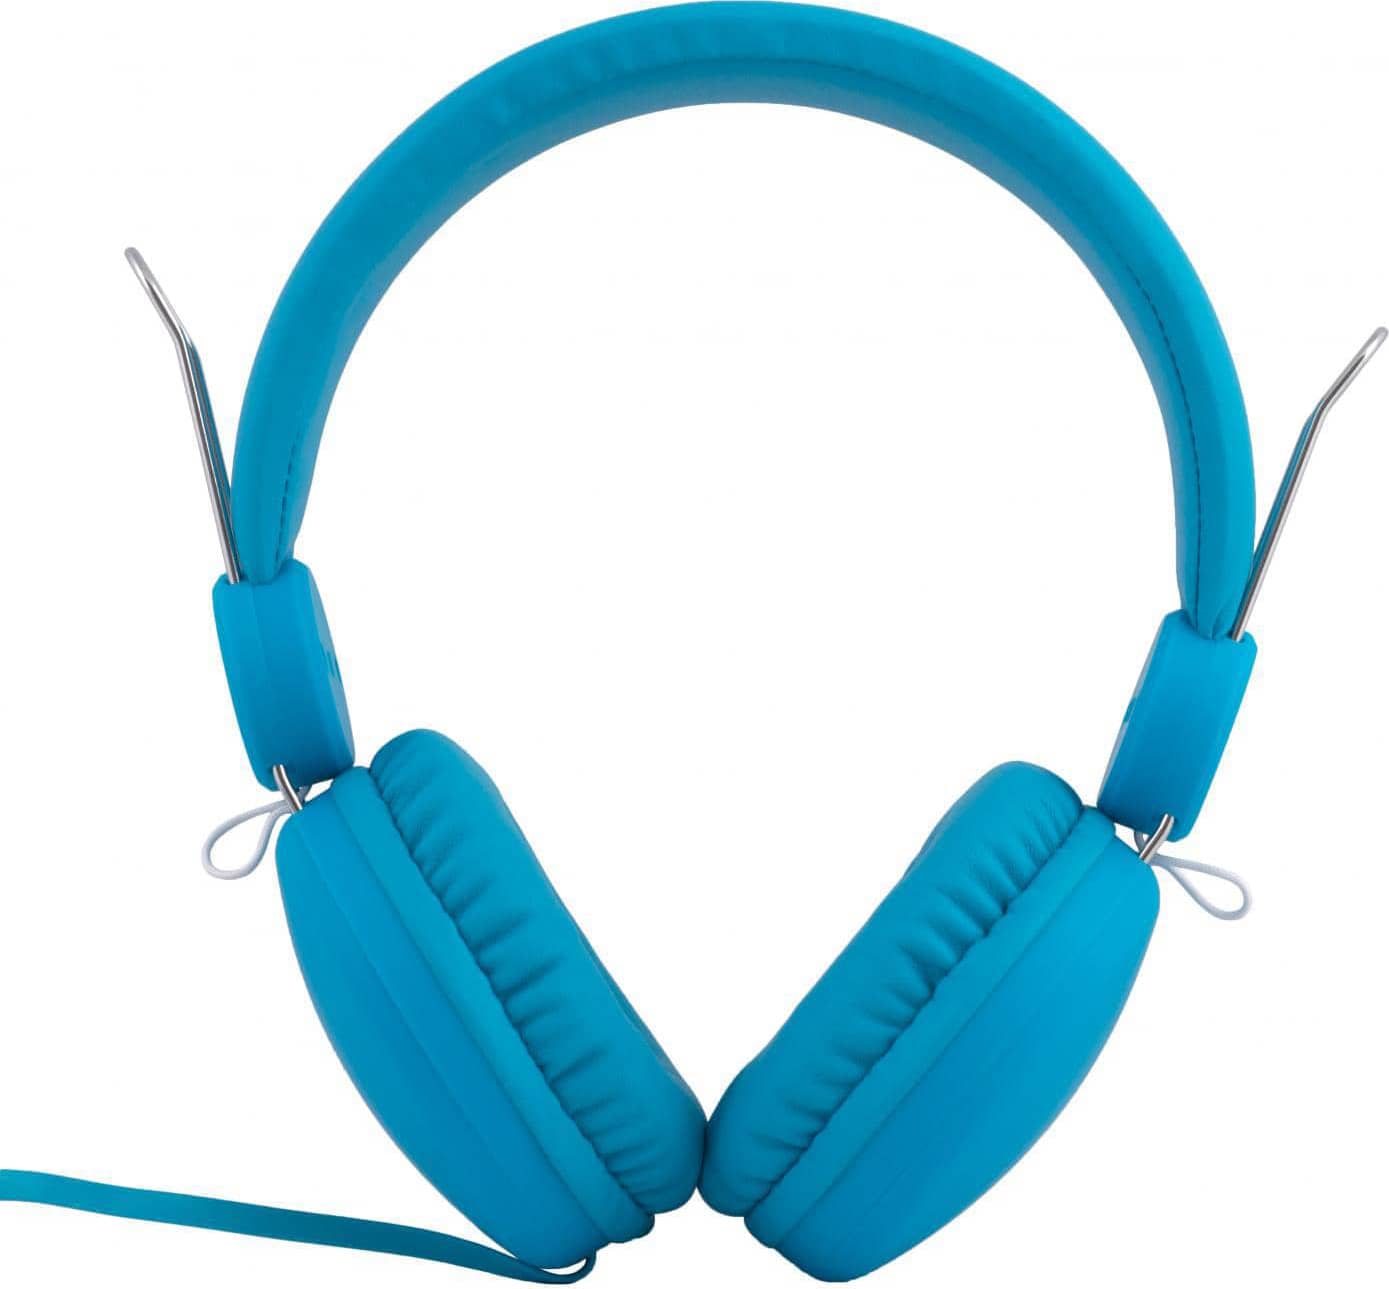 Maxell 303642 Cuffie con Filo e Microfono Cuffia Sovraurale colore Blu